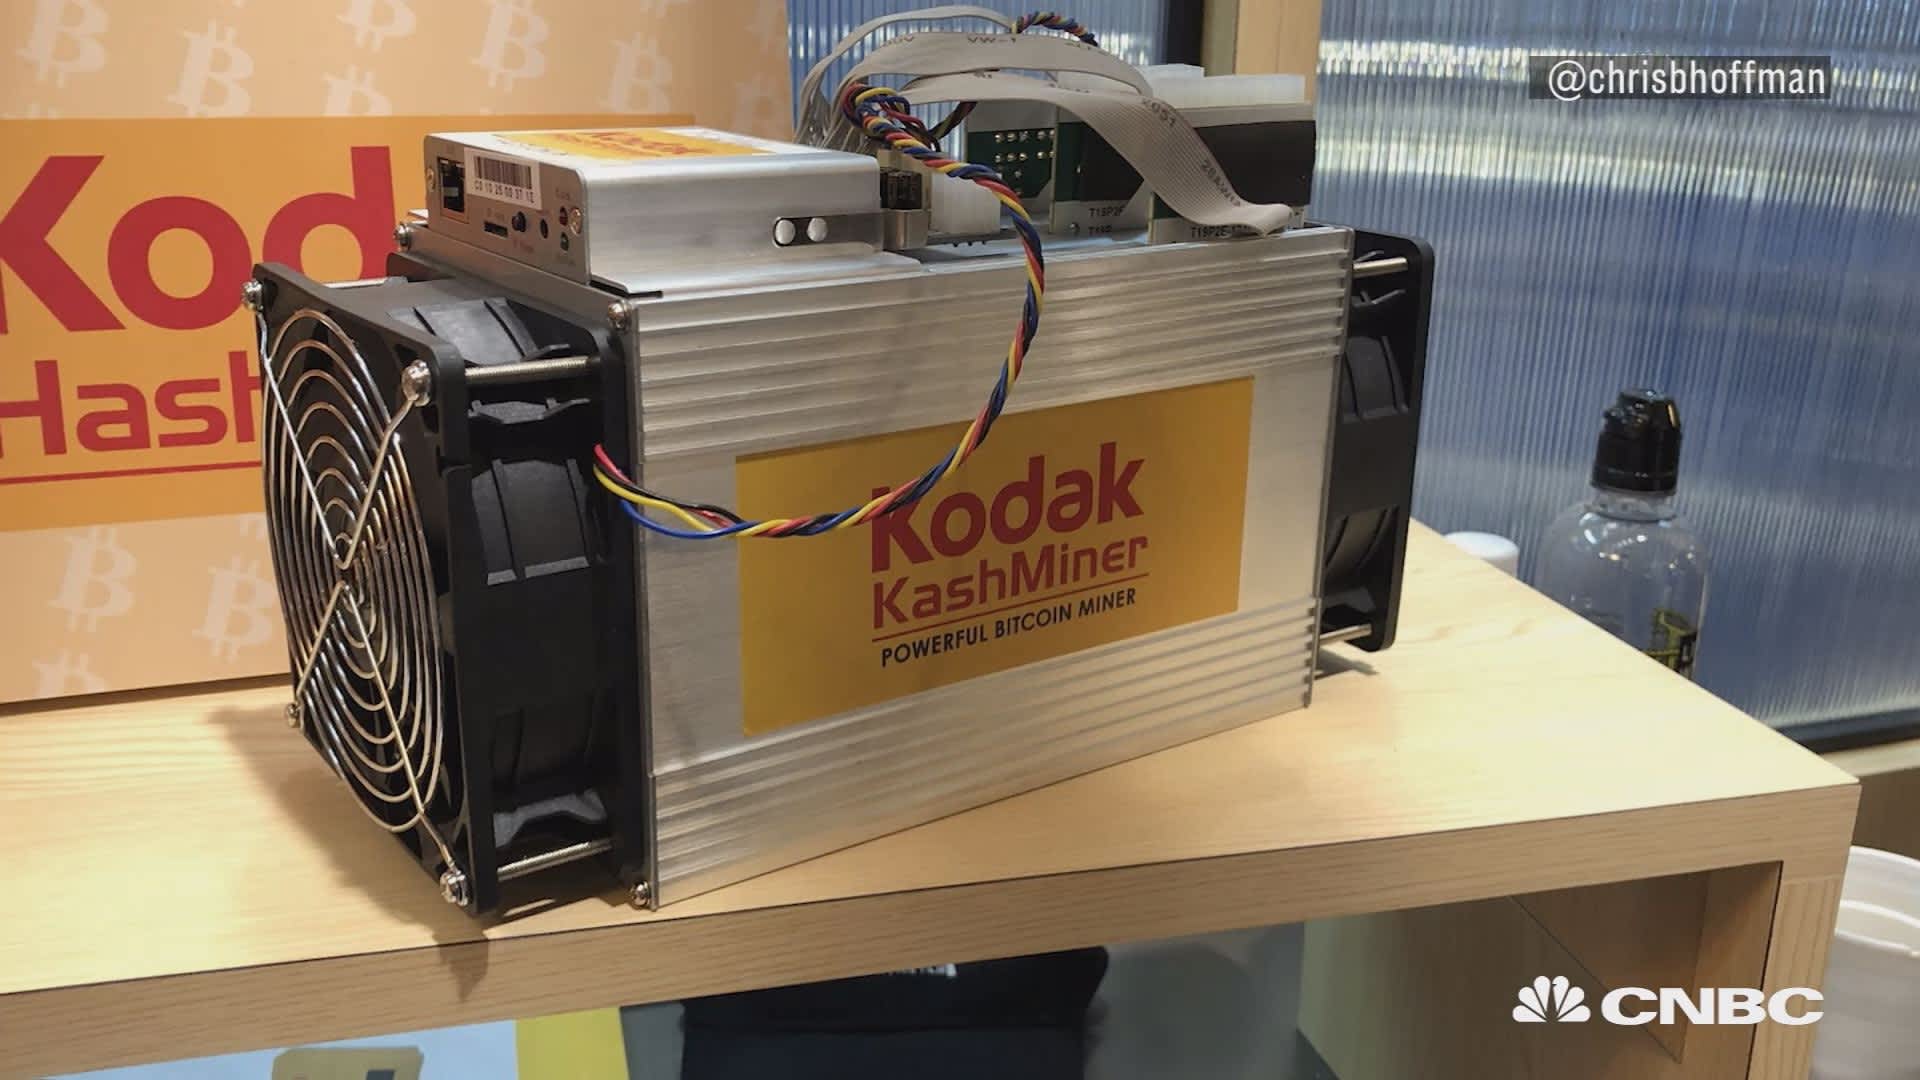 Meet The Kodak Branded Kashminer - 